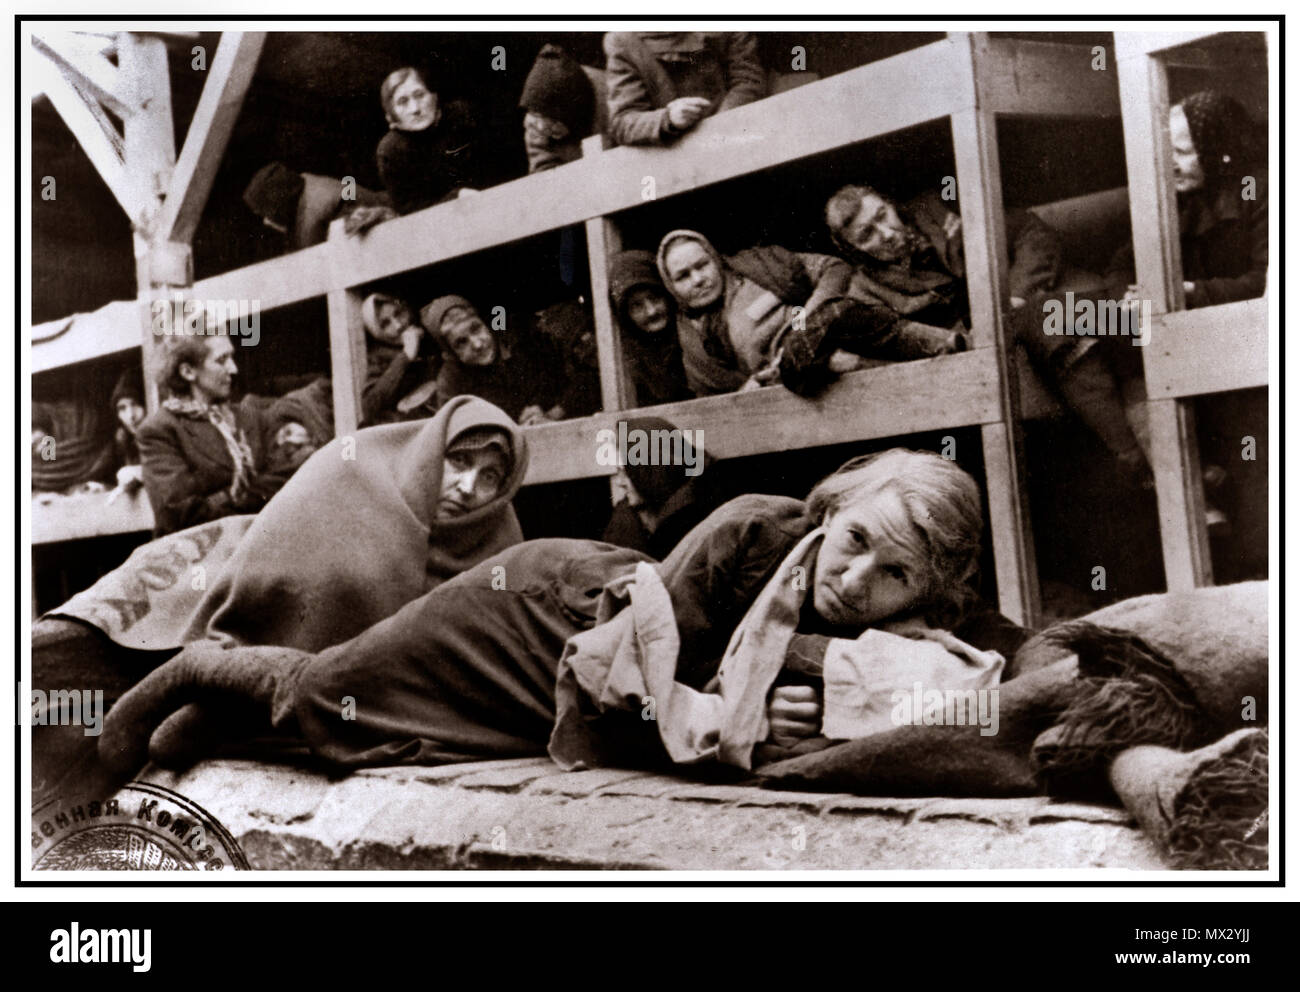 1940's olocausto WW2 Auschwitz - Birkenau Germania nazista del campo di concentramento. Blocco di cella interno con donne prigionieri incarcerati imprigionato detenute nel congelamento cramped degradare le disumane condizioni di questo stark grim emotionless scena ha salutato i loro liberatori in 1945. Più di 1.1 milioni di persone sono morte di Auschwitz, compresi quasi un milione di ebrei. Coloro che non sono stati inviati direttamente alle camere a gas sono stati condannati ai lavori forzati. Il campo di Auschwitz era complesso essenziale per eseguire il piano nazista per la "Soluzione Finale". Auschwitz ha lasciato il segno come uno dei più famigerati Campi della II Guerra Mondiale Foto Stock